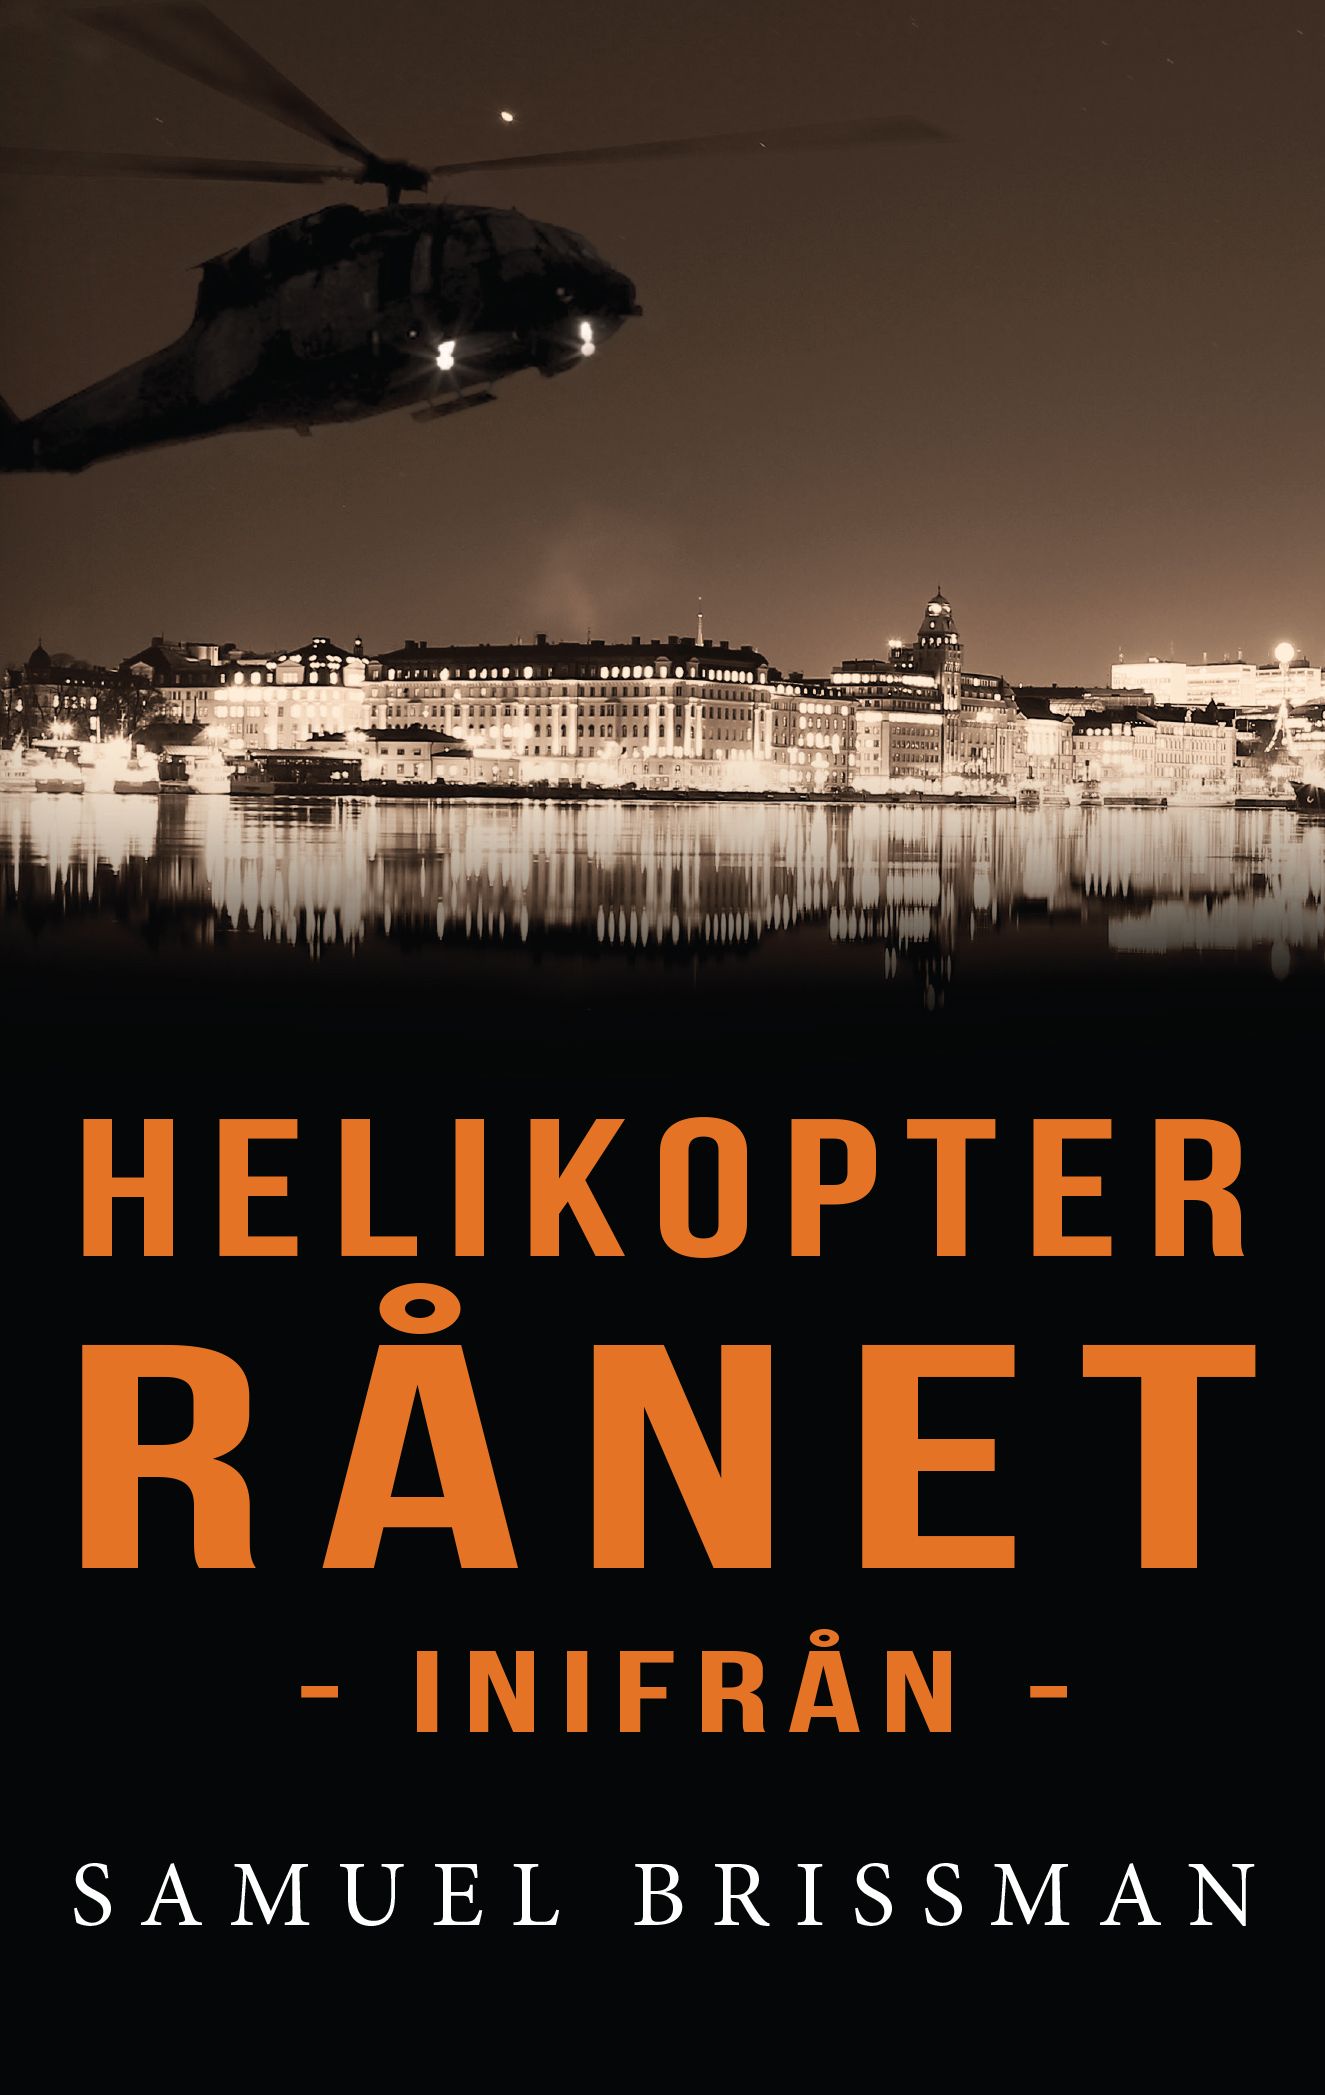 Helikopterrånet - inifrån, eBook by Samuel Brissman